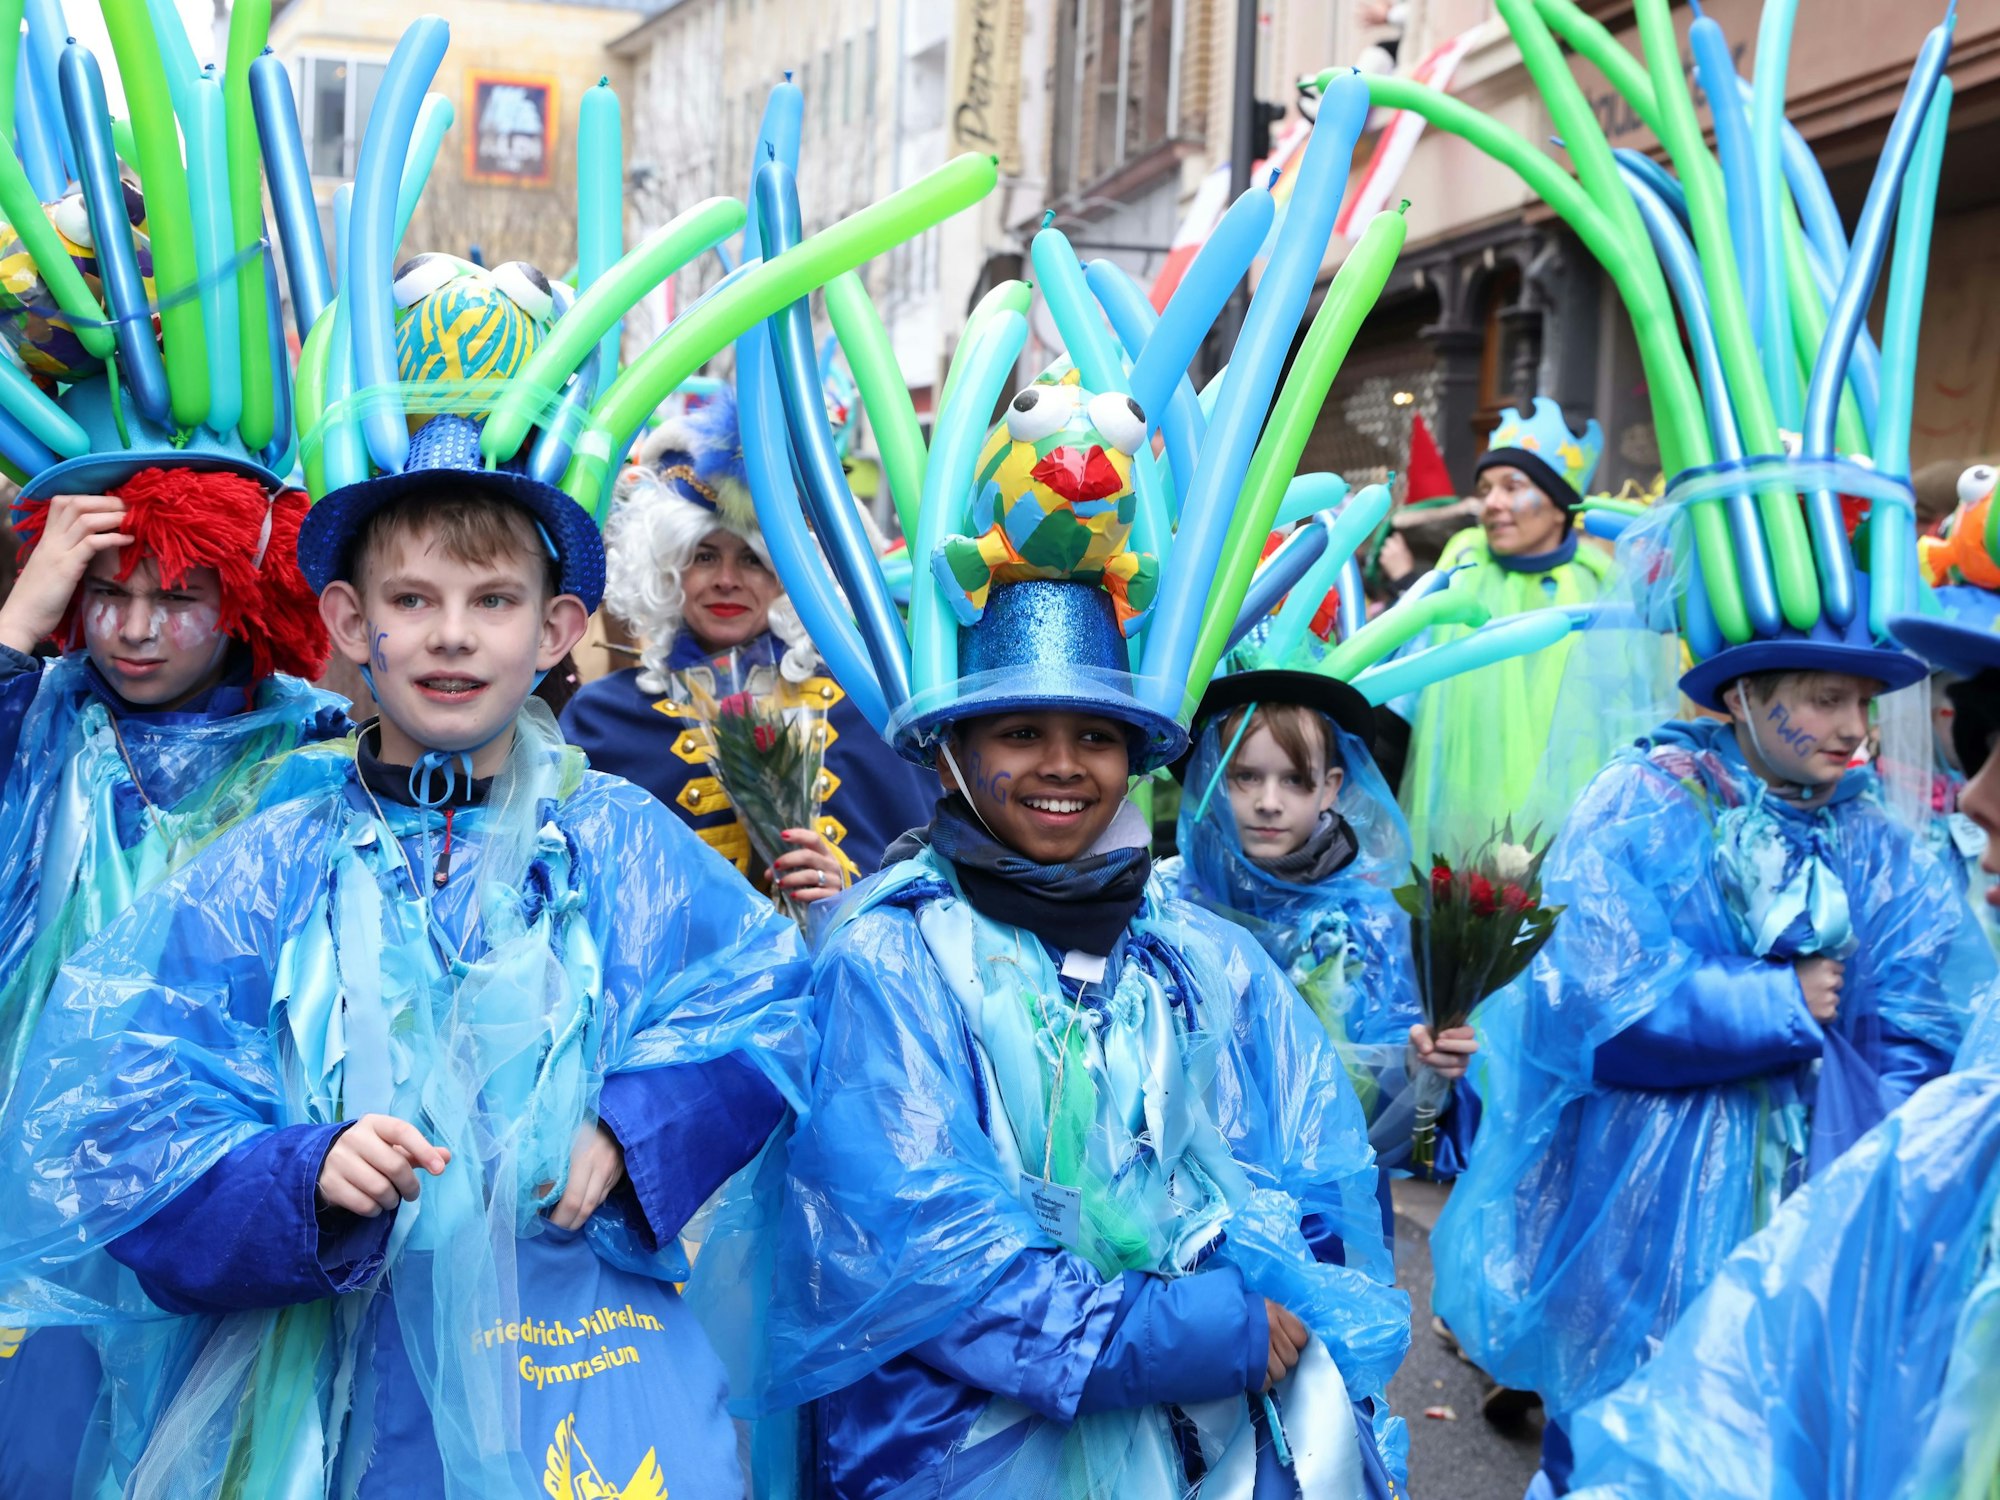 Schülerinnen und Schüler in regenfesten Karnevalskostümen.